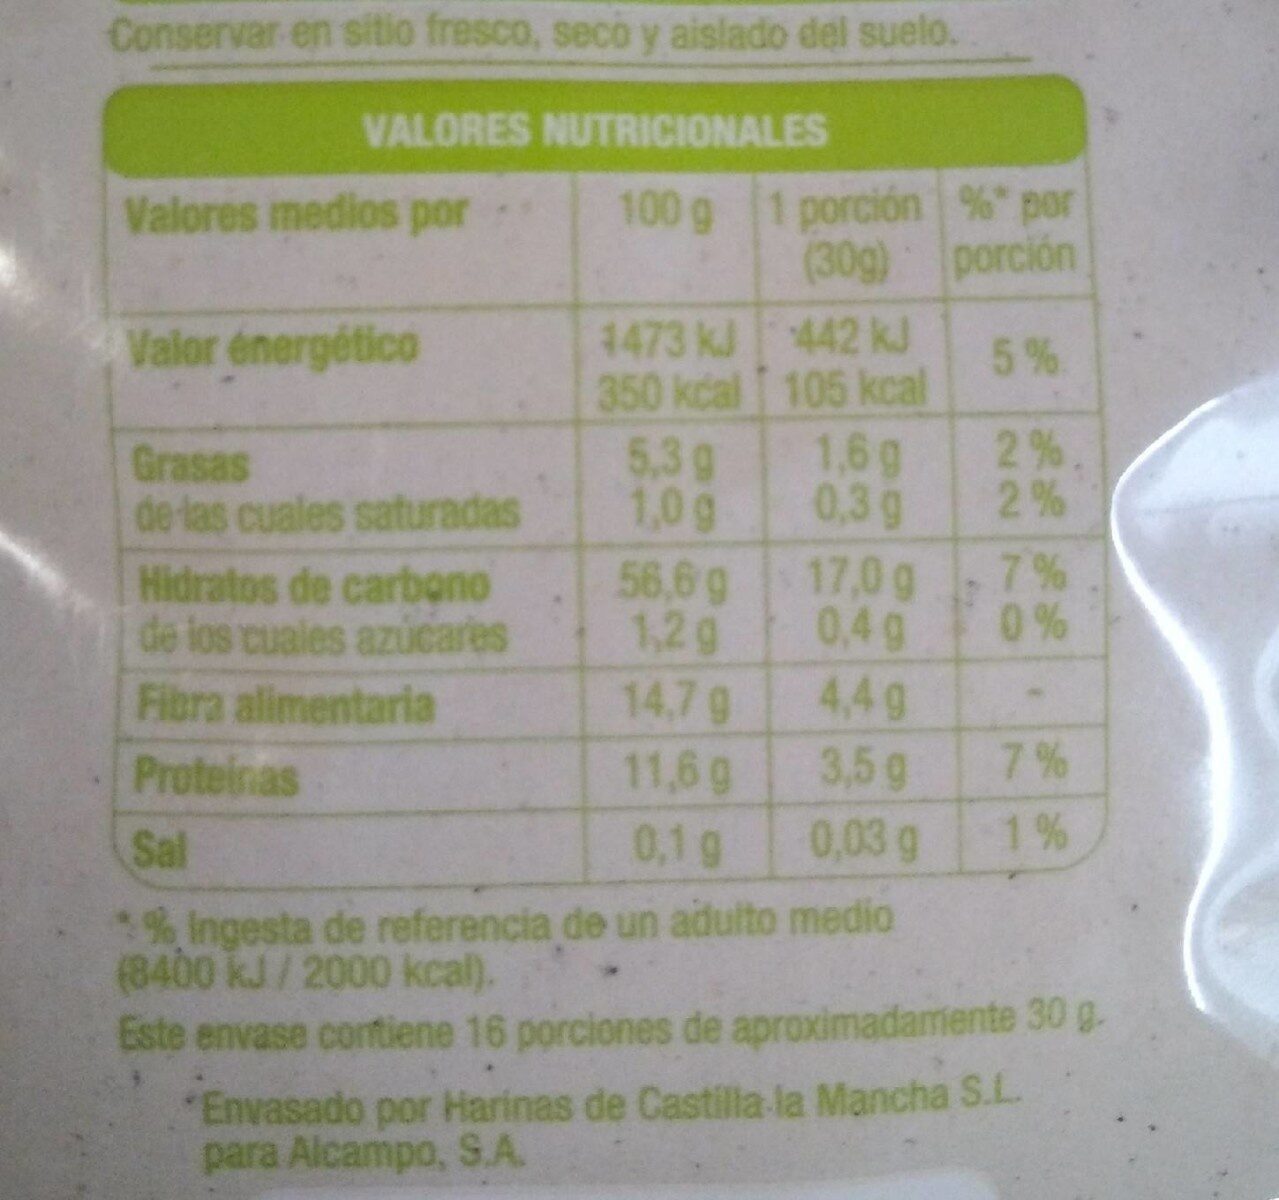 Copos suaves de avena Integral - Información nutricional